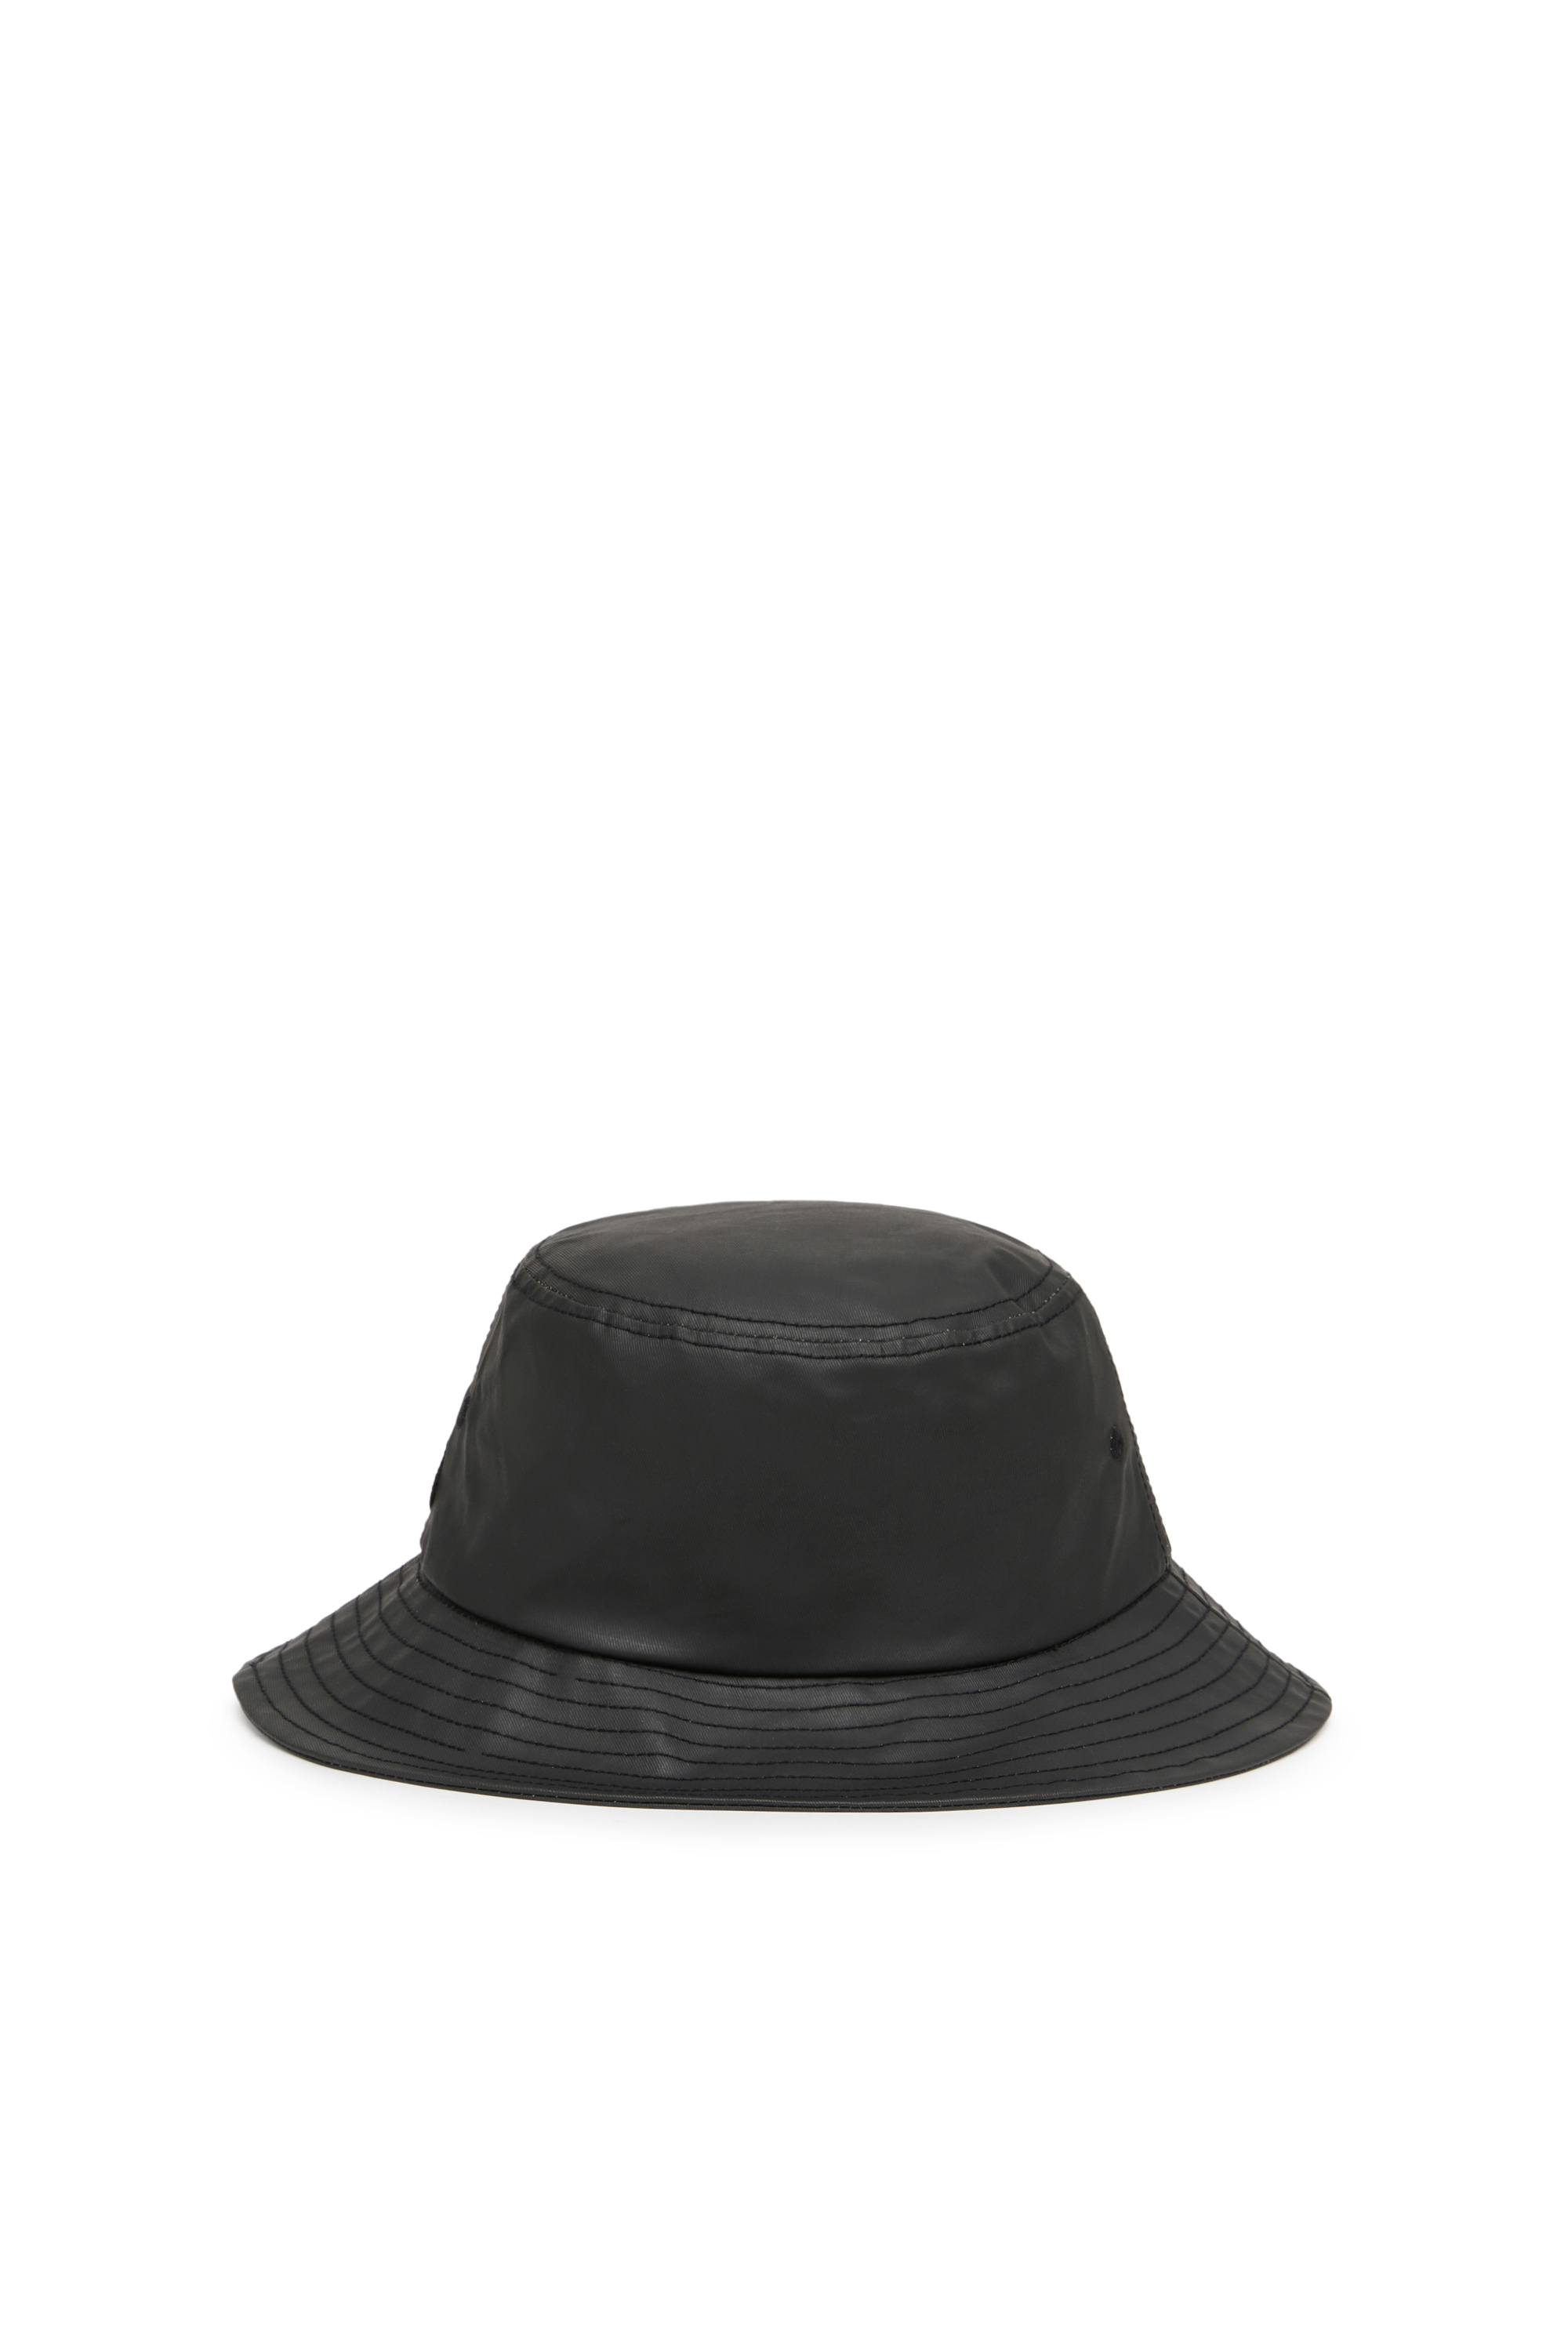 Diesel - Sombrero de pescador de sarga recubierta - Gorras - Hombre - Negro